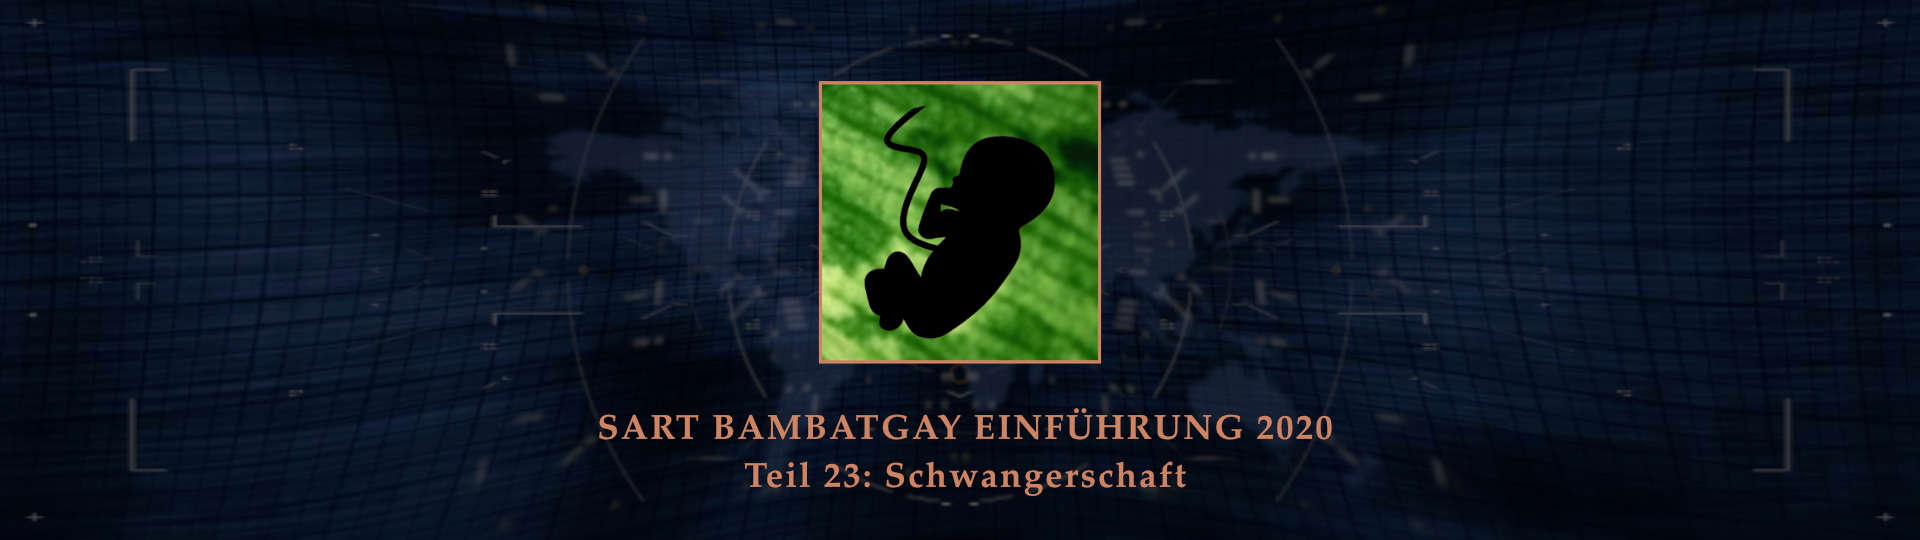 Sart bambatgay einfuehrung 2020 teil 23 schwangerschaft BANNER